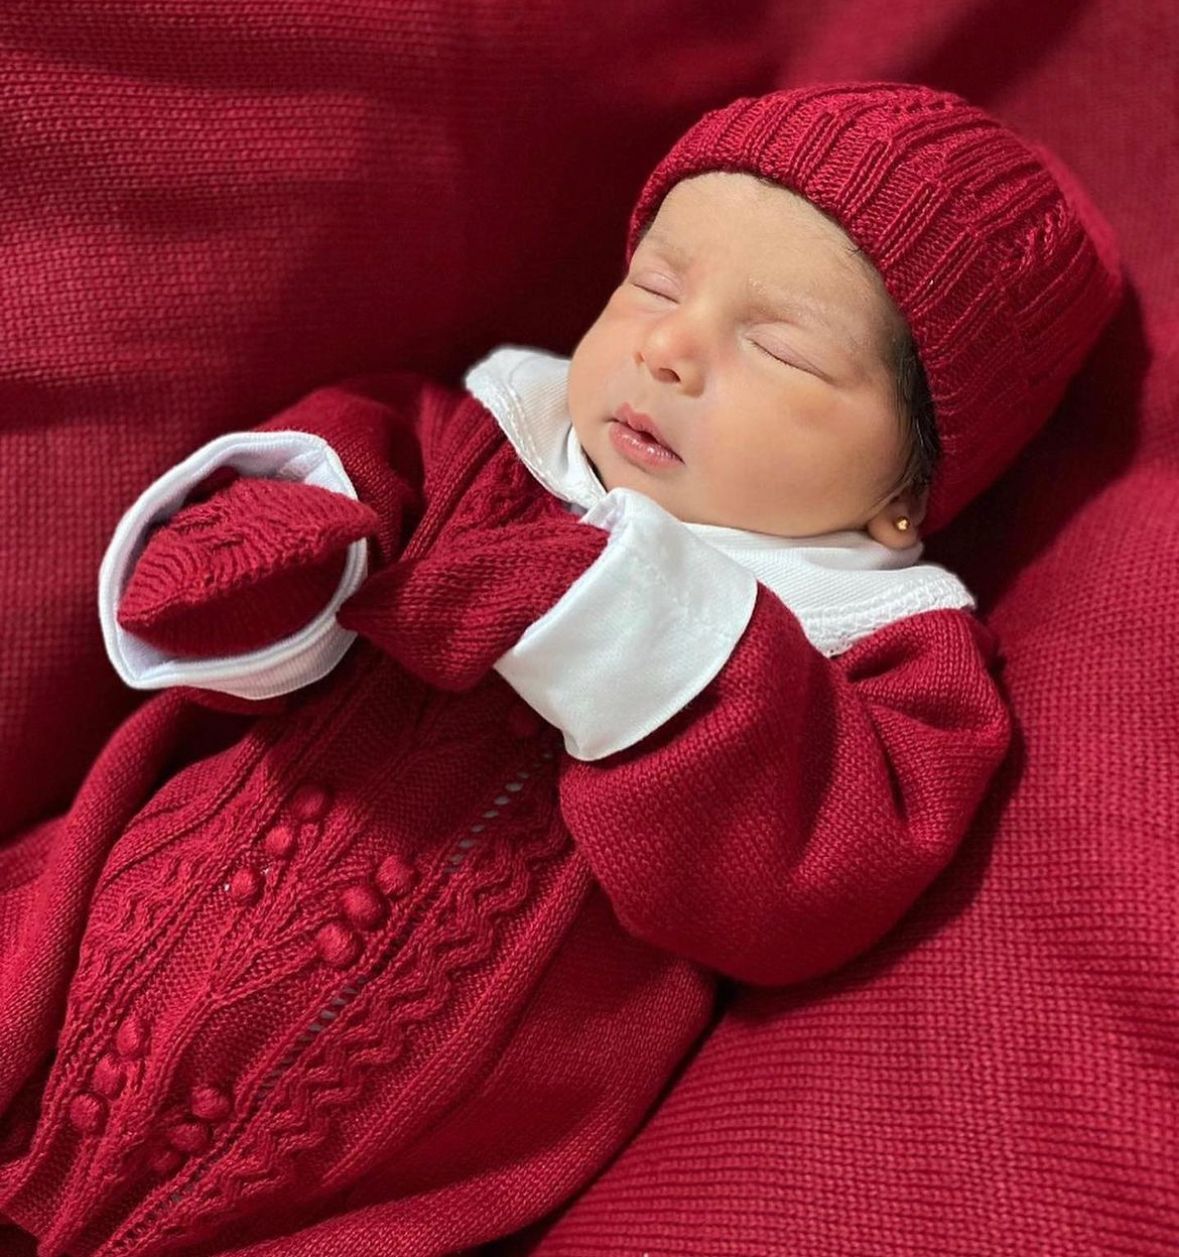 A foto mostra a bebê dormindo confortavelmente, vestindo o kit que a deixa ainda mais linda.  